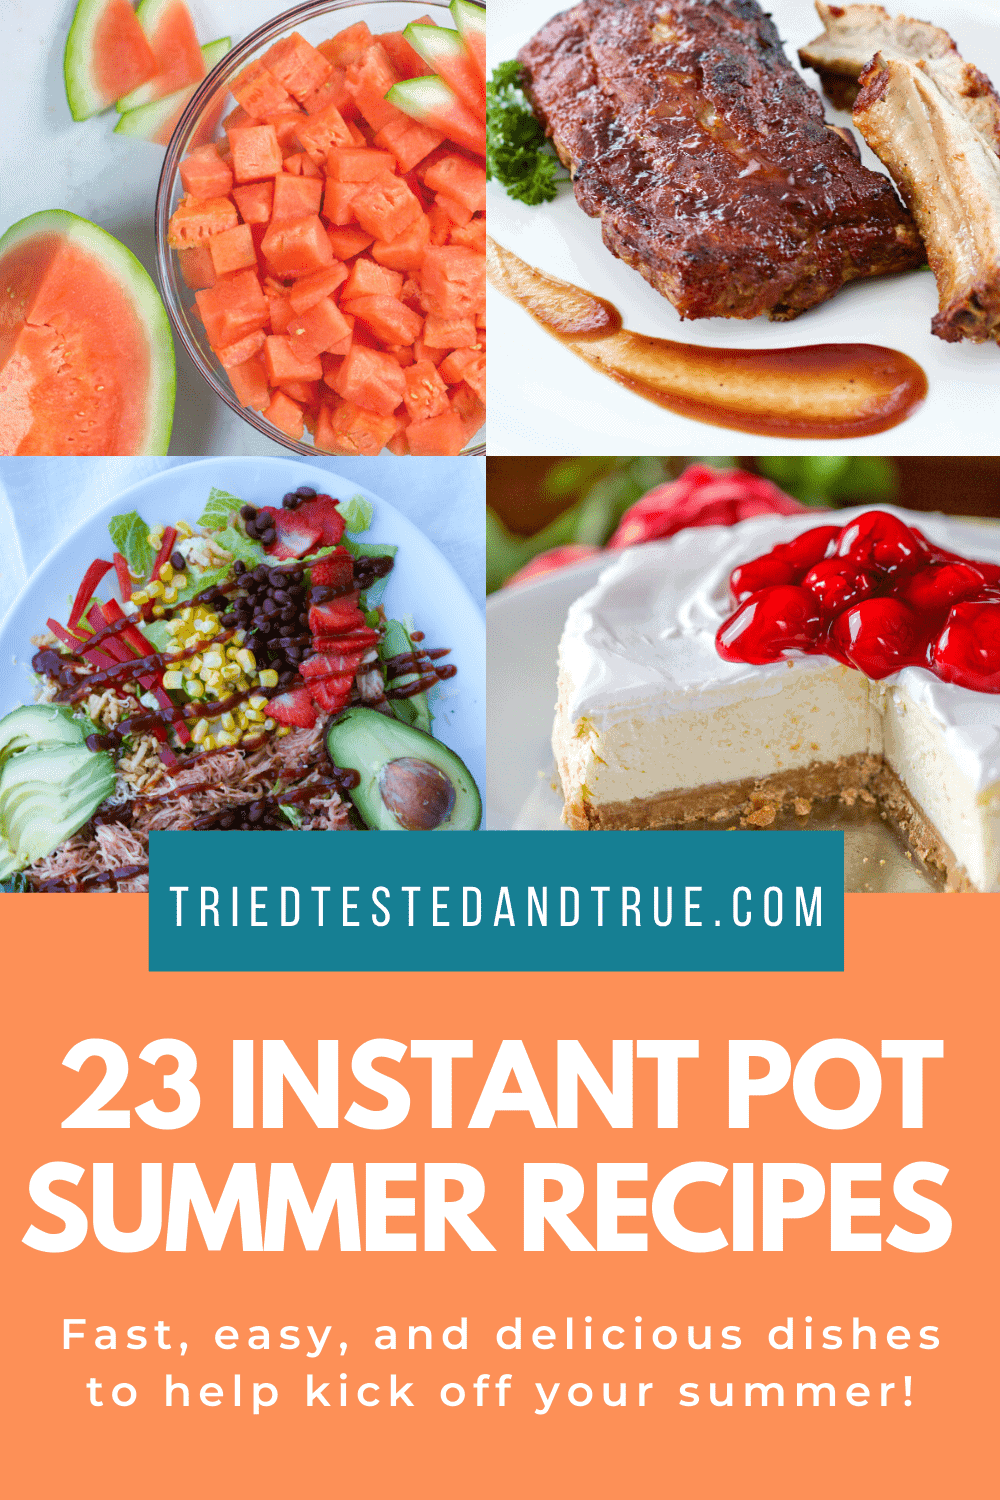 23 Instant Pot summer recipes